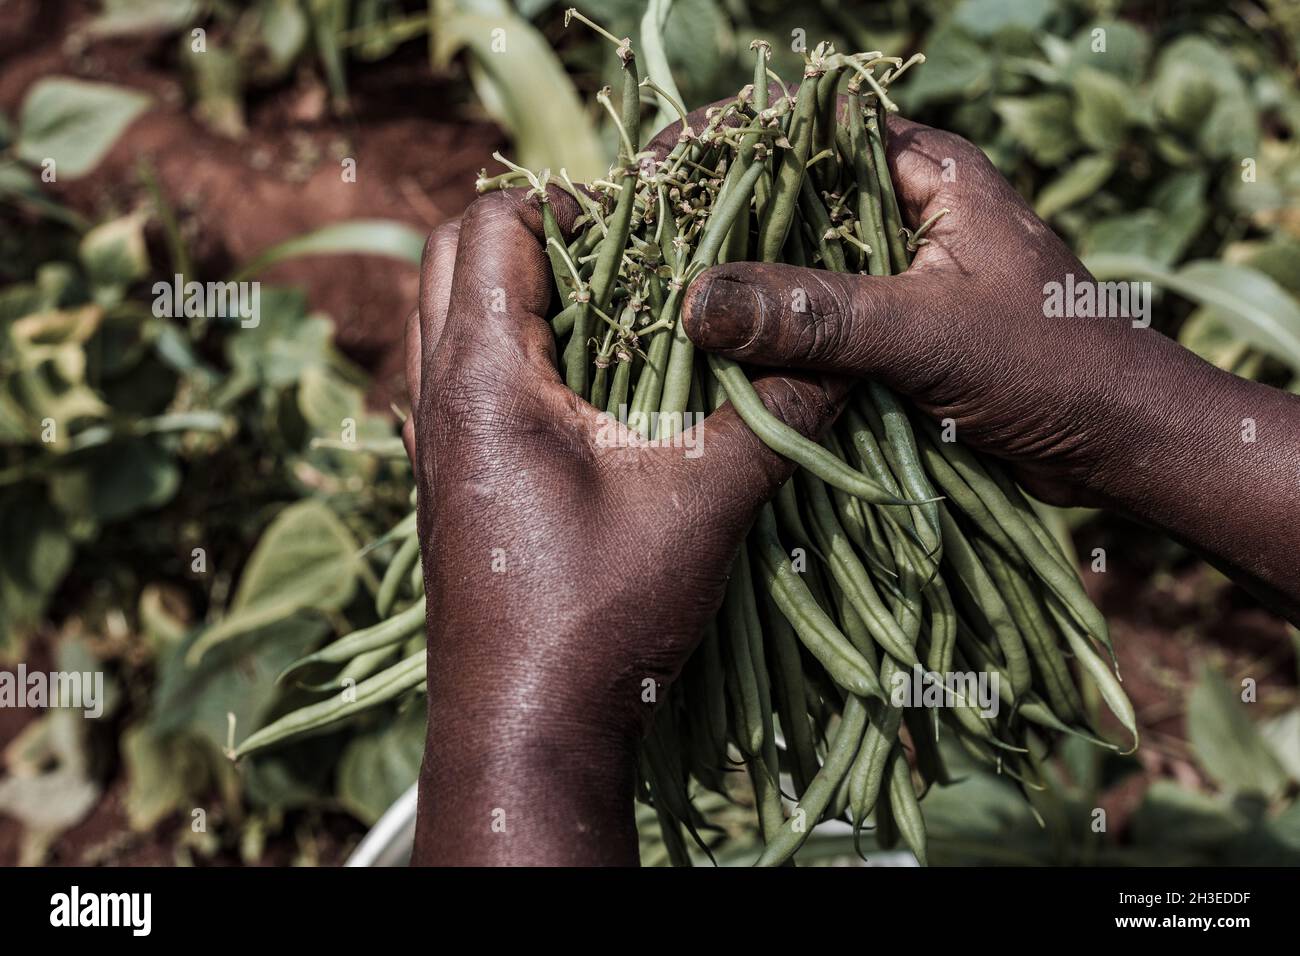 Le immagini delle mani che tengono i mangimi agricoli producono prodotti come i fagioli verdi francesi, il grano essiccato e il pepe verde nella fattoria Foto Stock